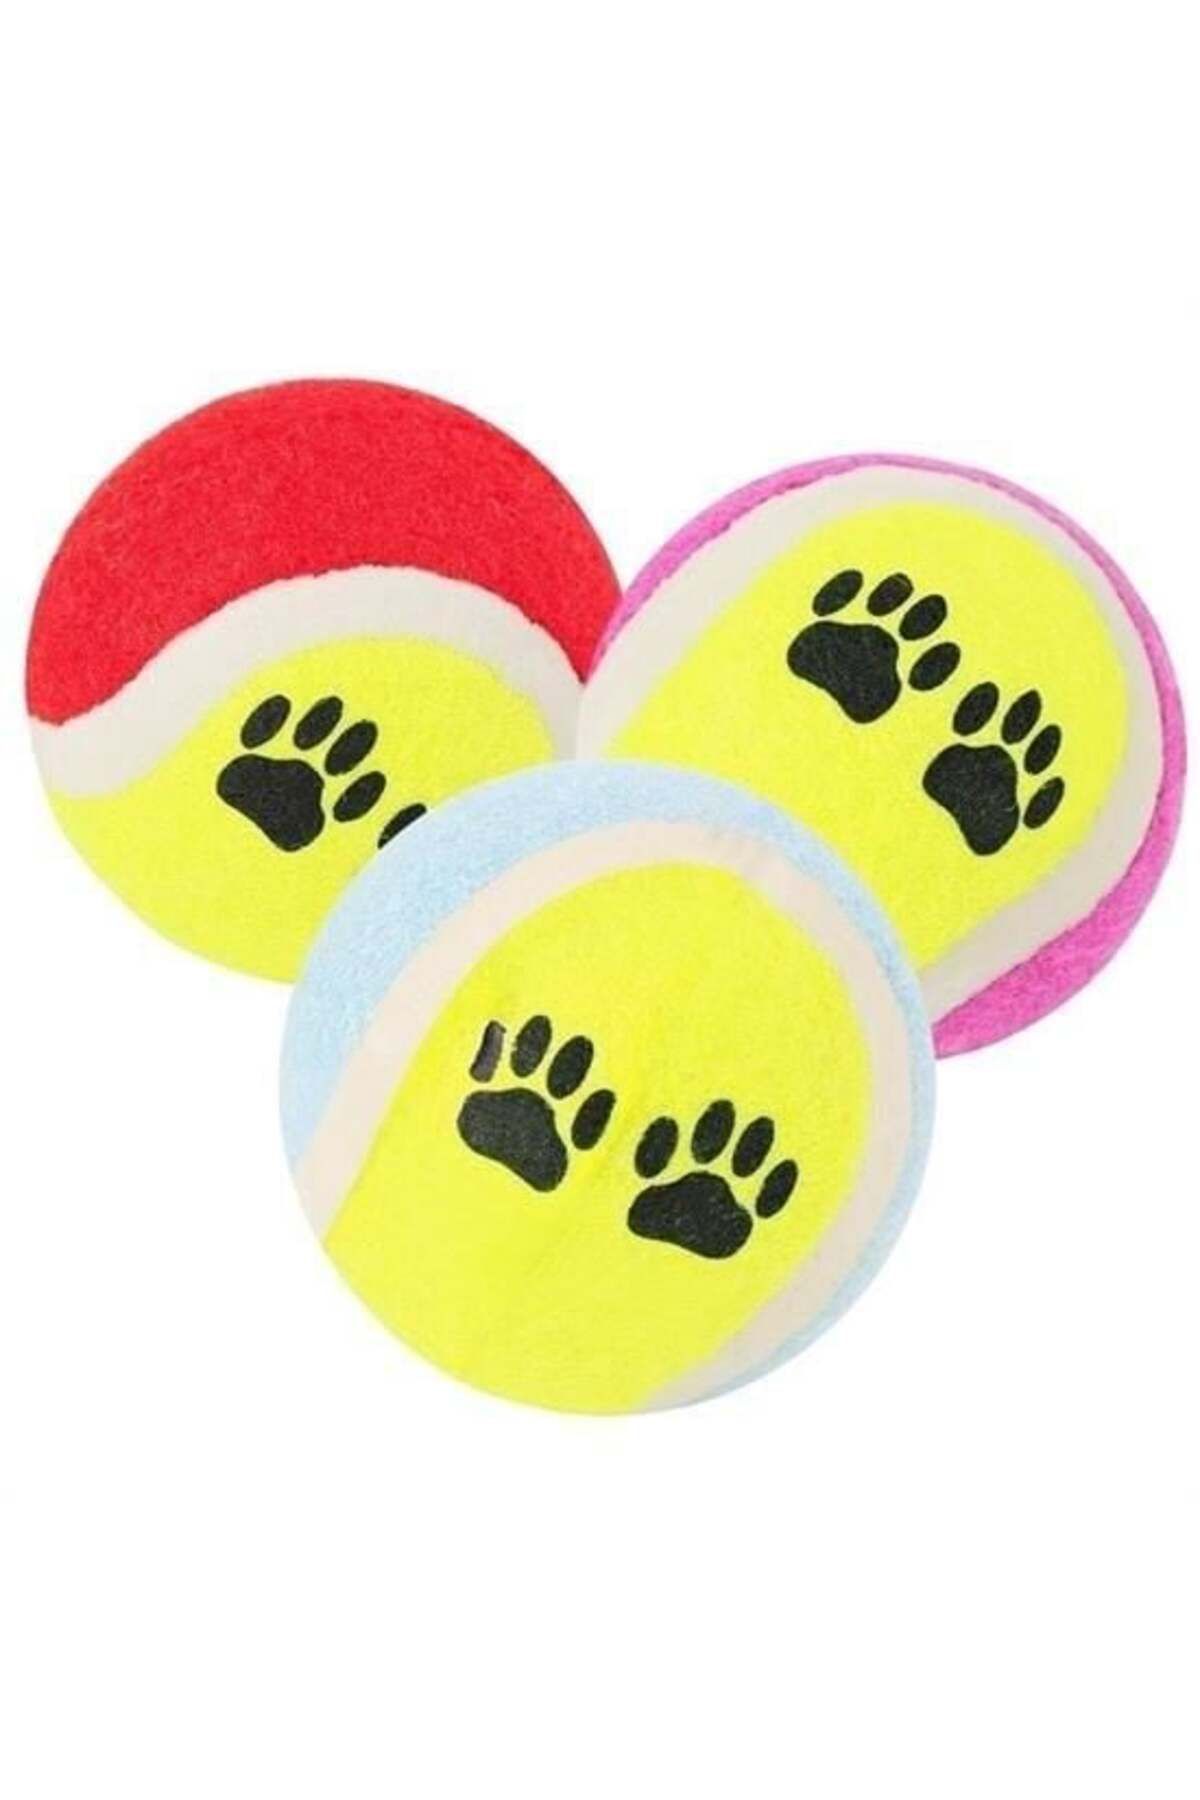 SKY TOPTAN 3'lü Renkli Desenli Tenis Topu Kedi Köpek Oyuncağı -1 adet stokta olan gönderilir